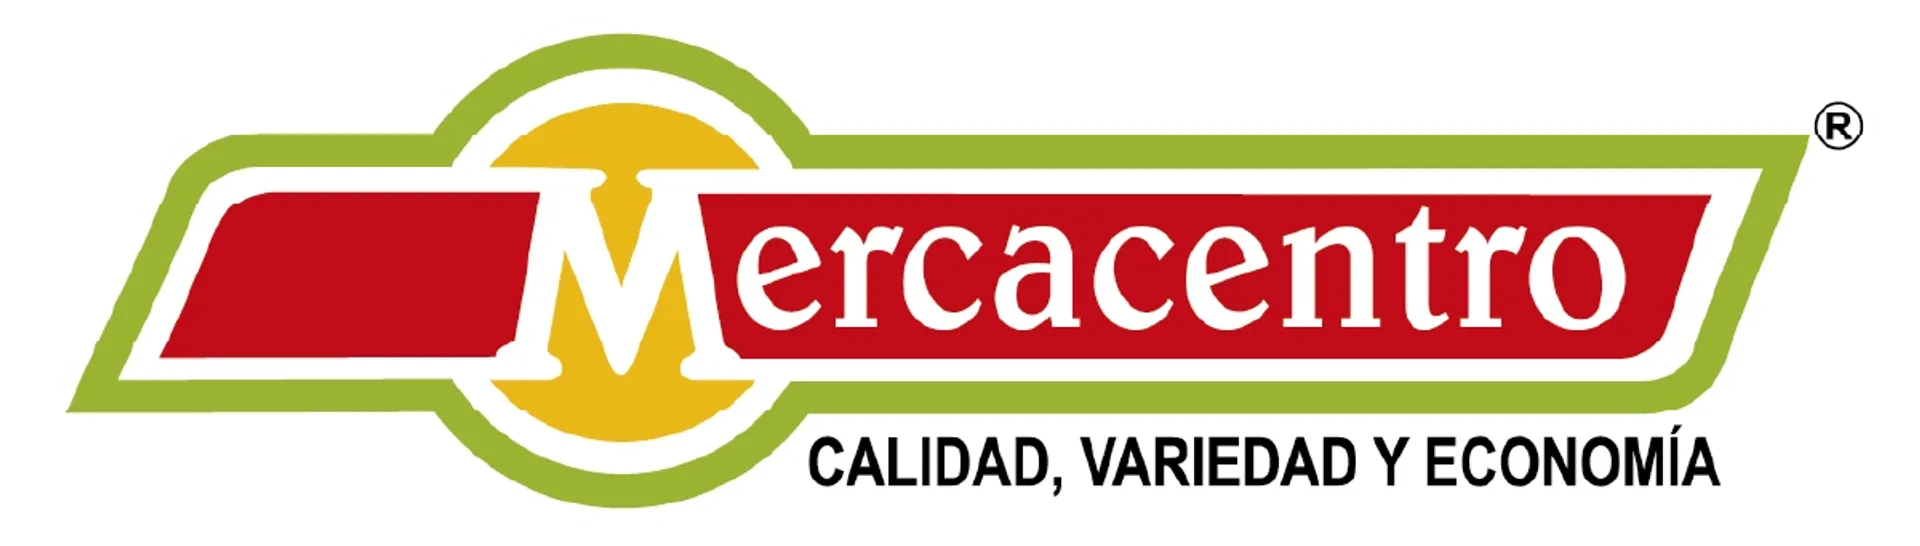 MERCACENTRO logo de catálogo